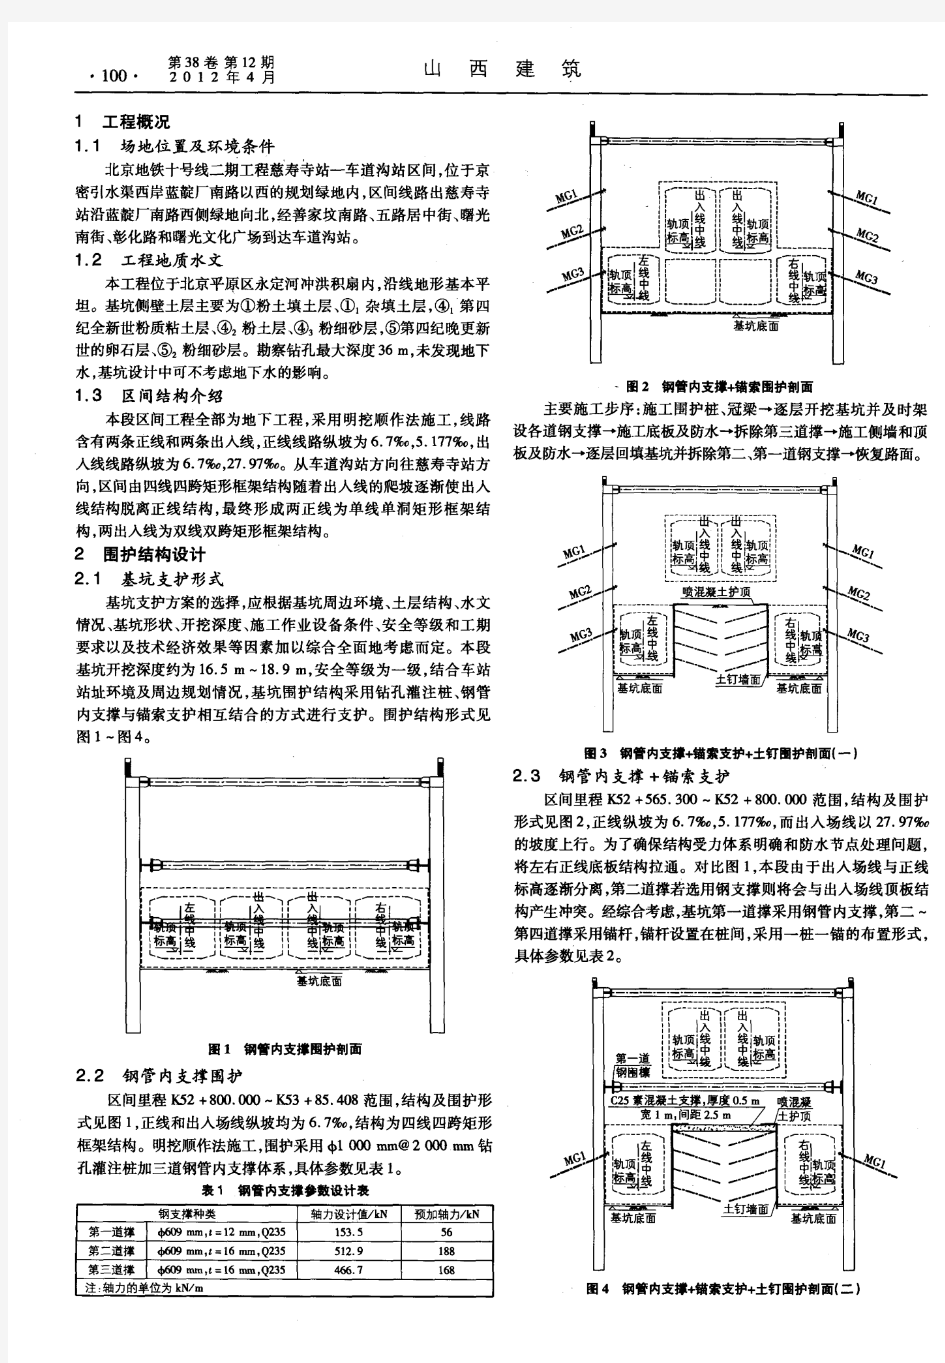 北京地铁十号线四线明挖区间围护结构选型